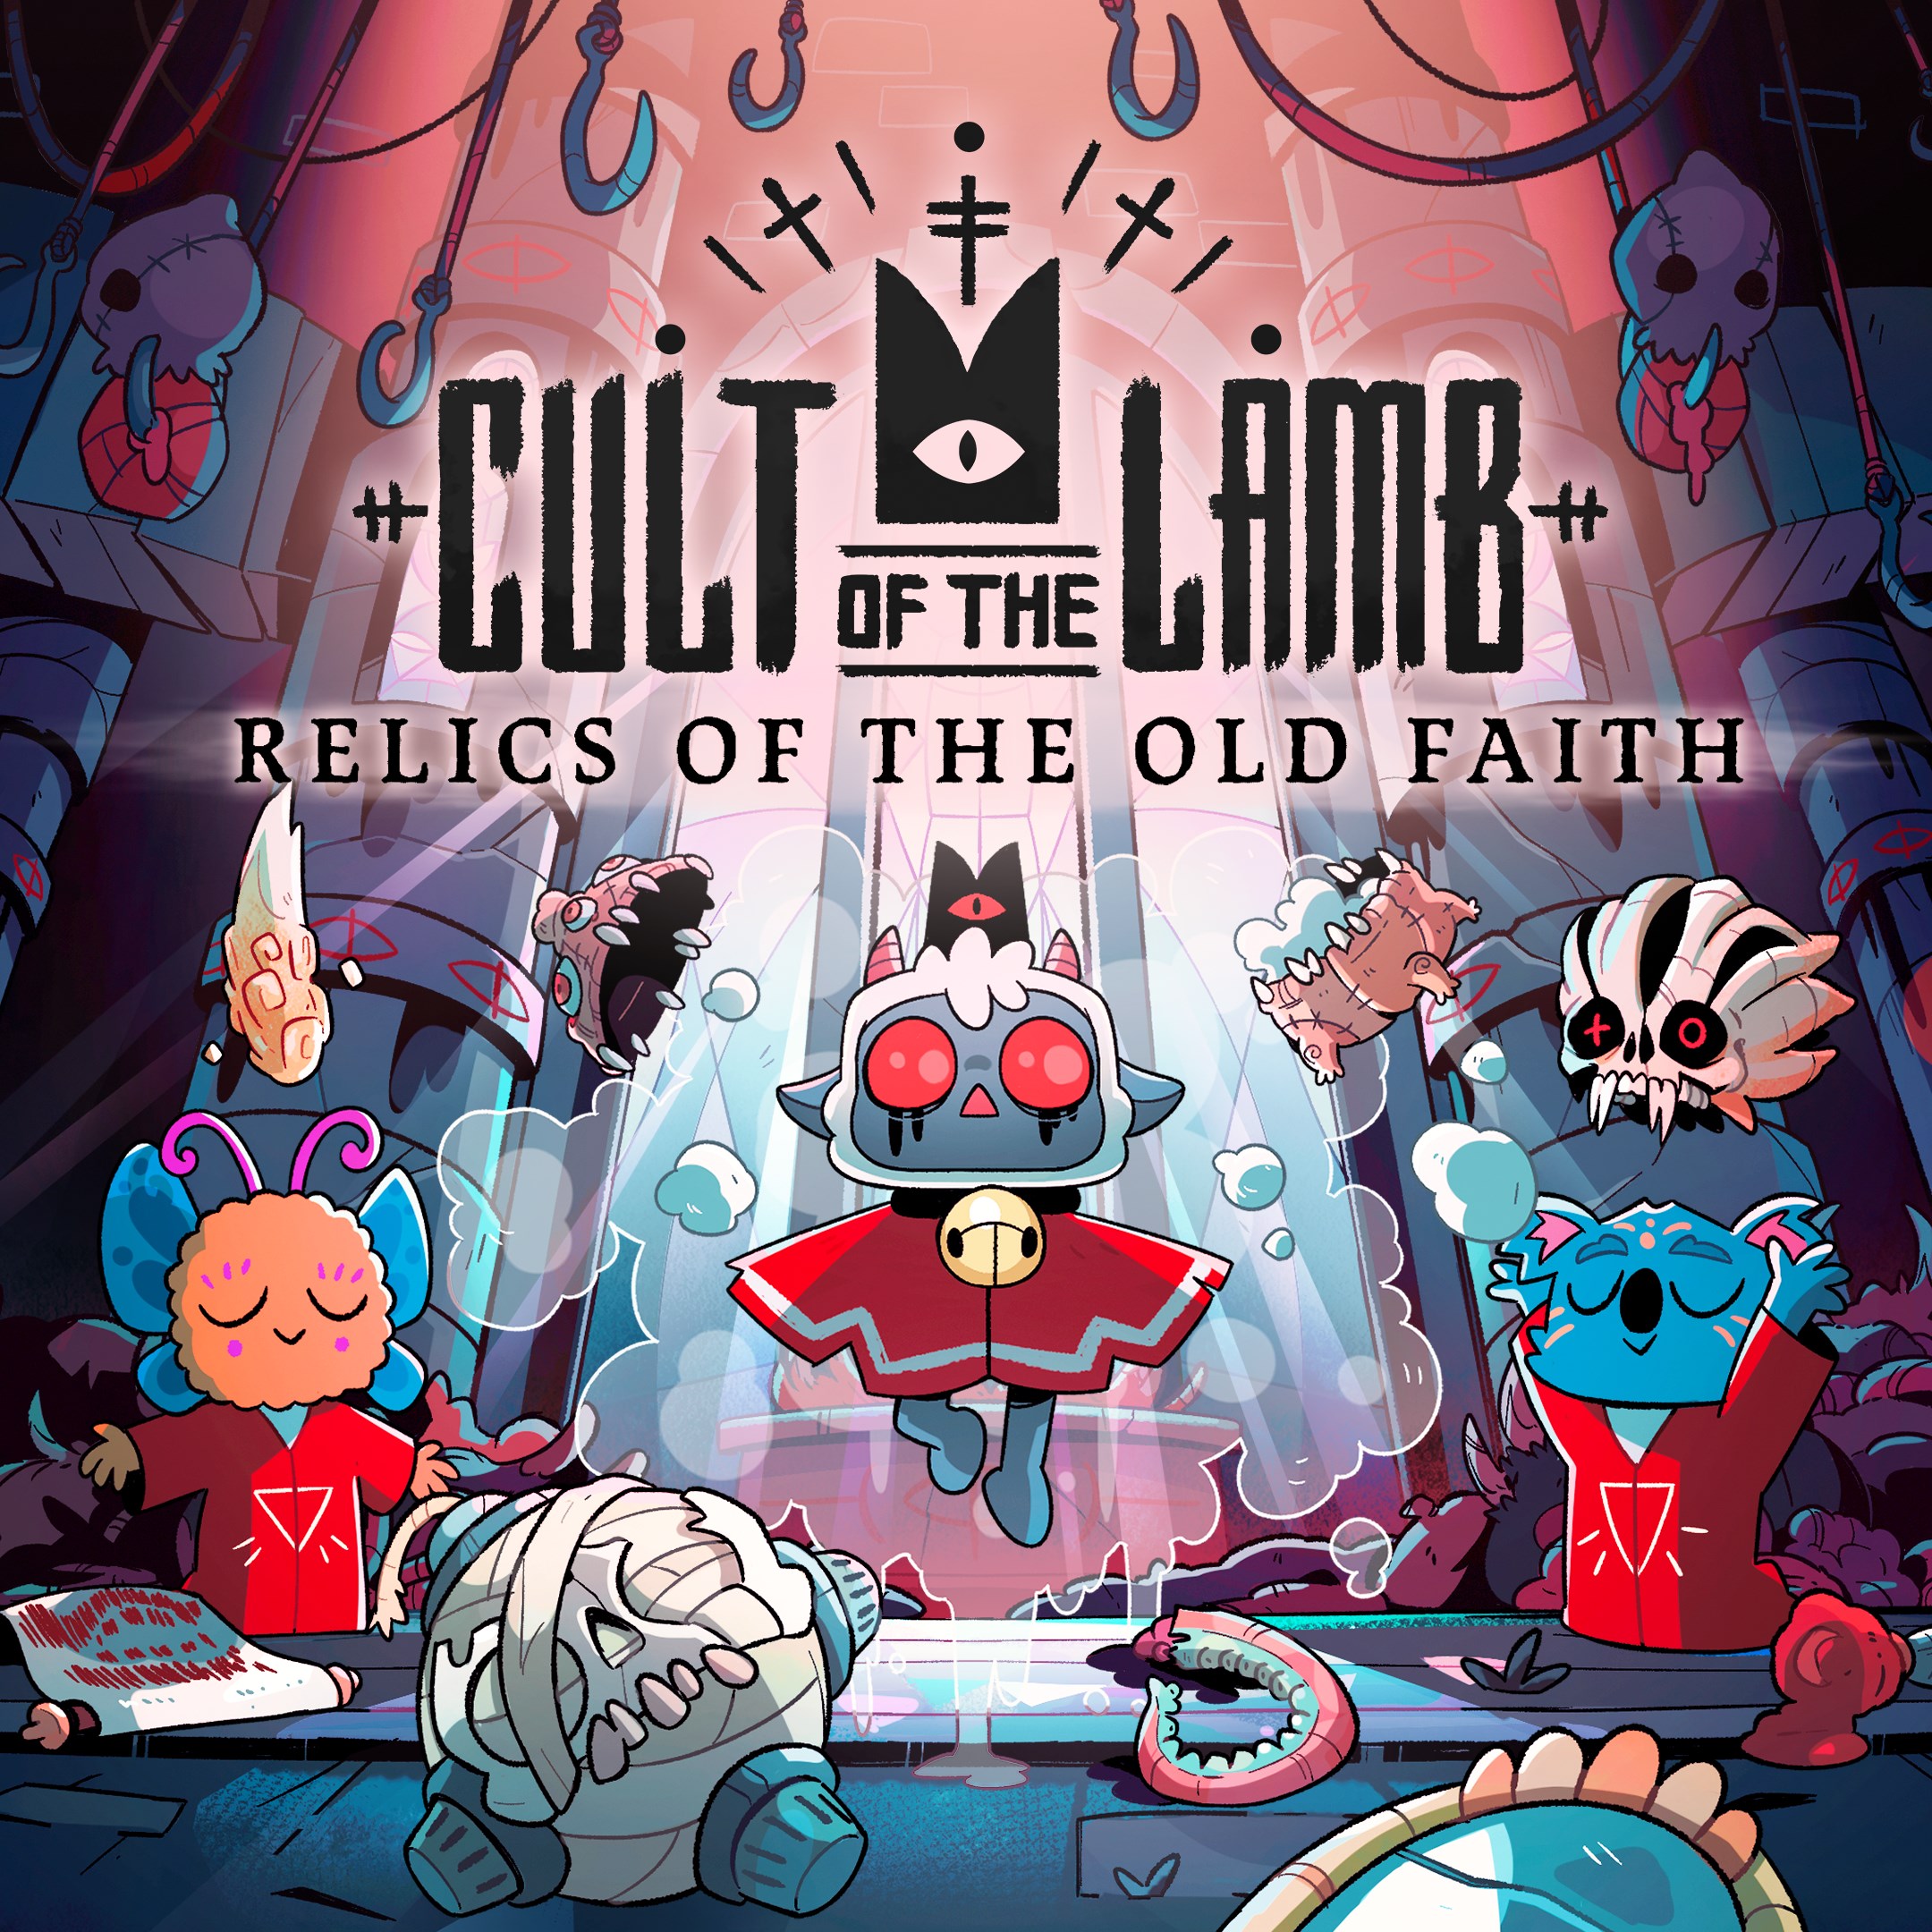 Buy Cult of the Lamb - Heretic Pack - Microsoft Store en-SA